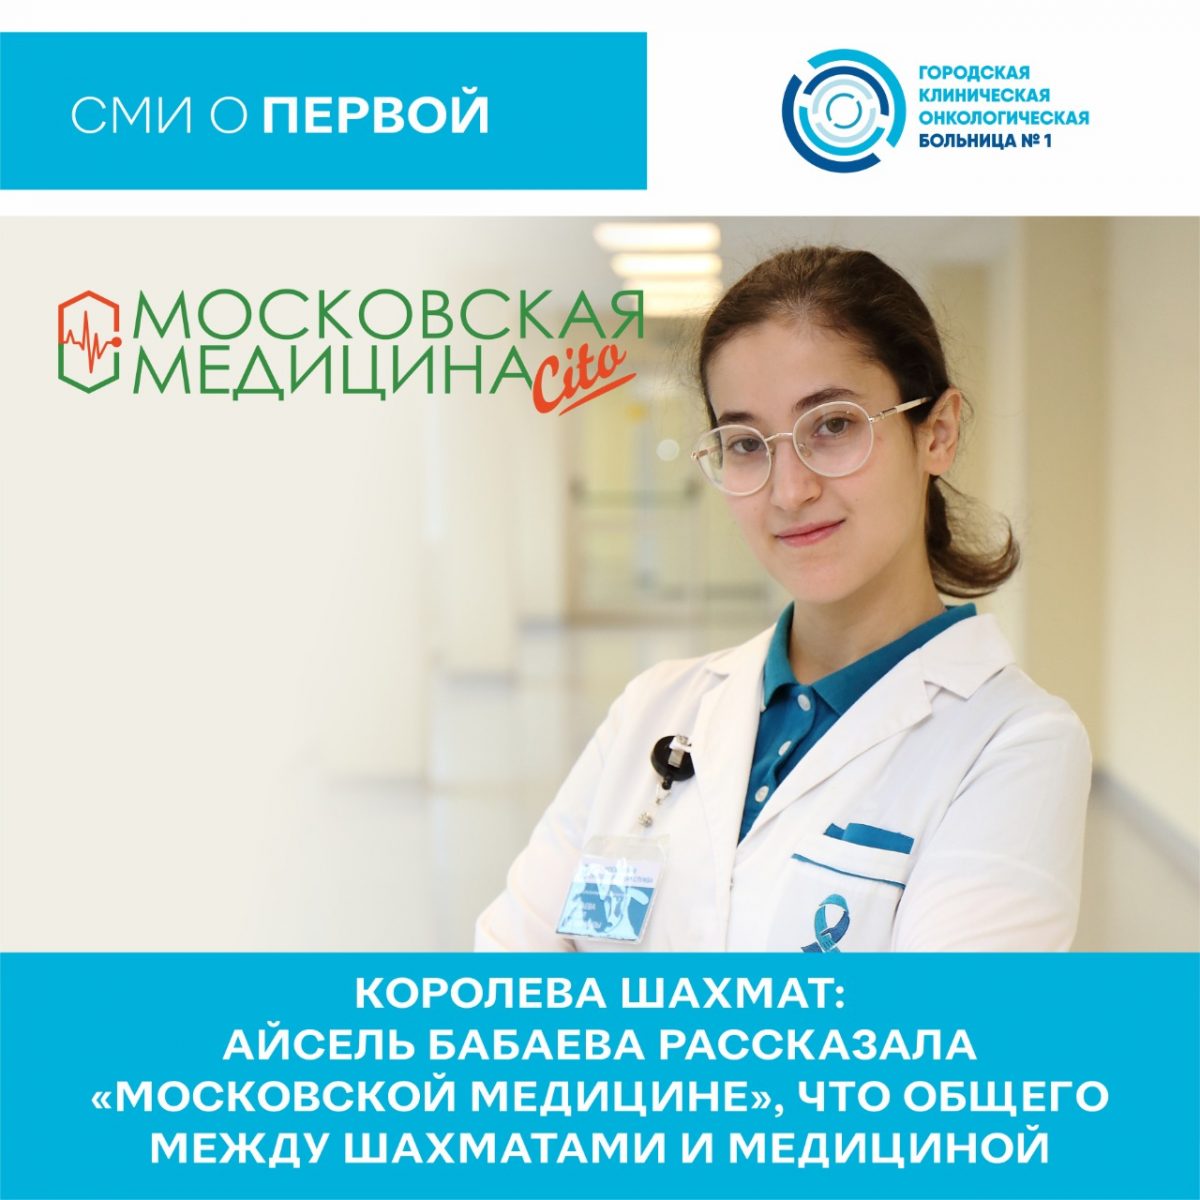 Королева шахмат: Айсель Бабаева рассказала «Московской медицине», что общего между шахматами и медициной